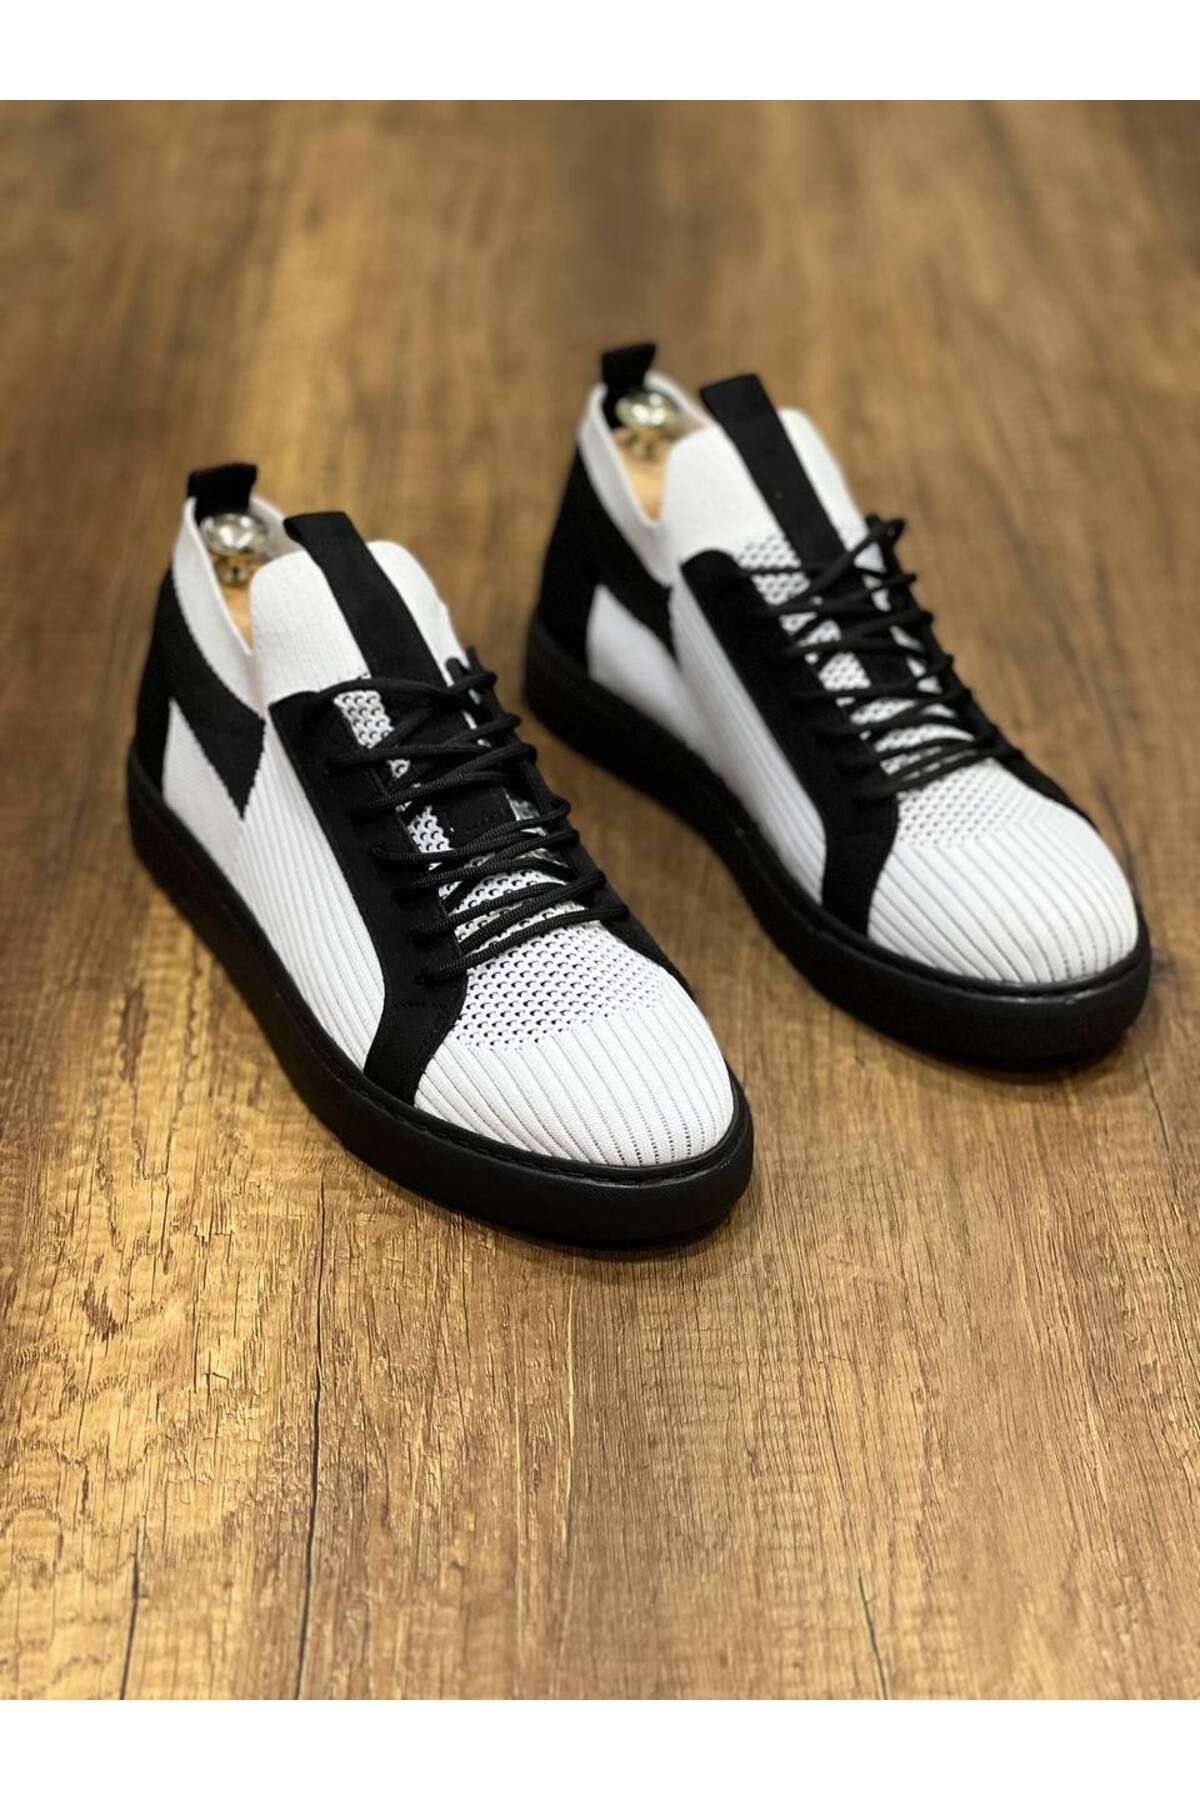 TREND CLZ946 Beyaz Siyah Siyah TabanTriko Bağcıklı  Günlük Erkek  Ayakkabı